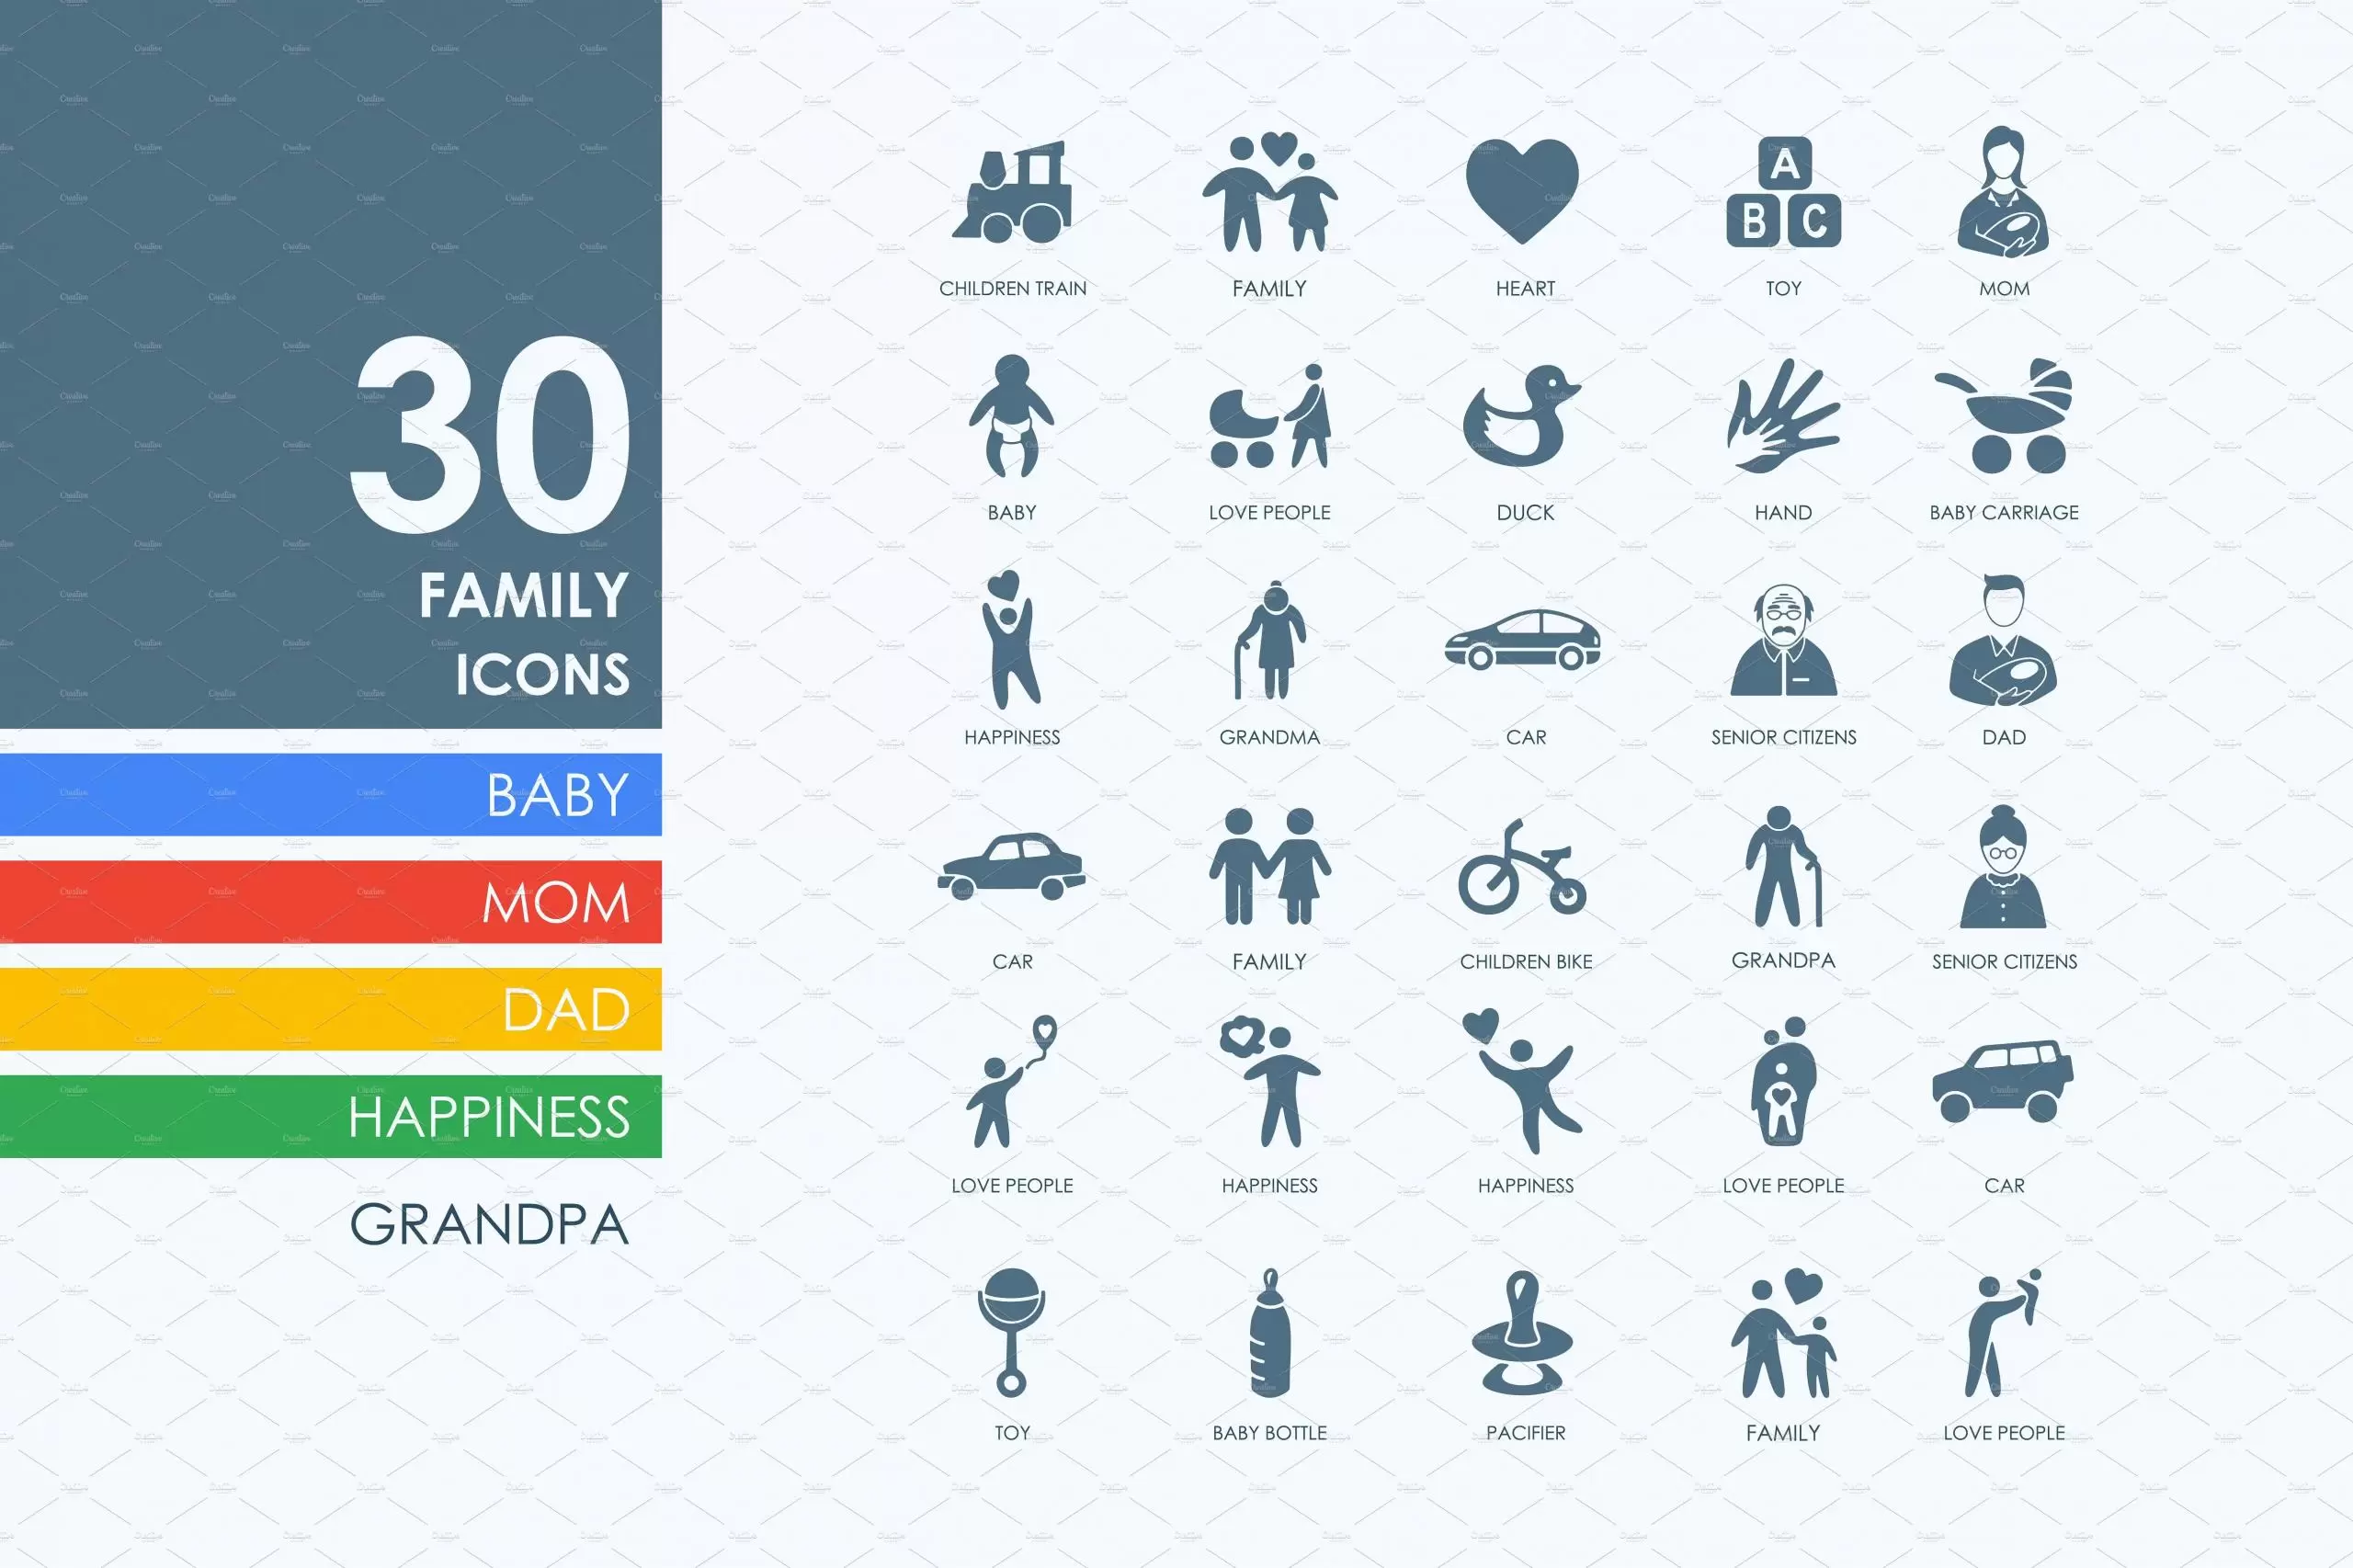 家庭图标素材 30 family icons插图